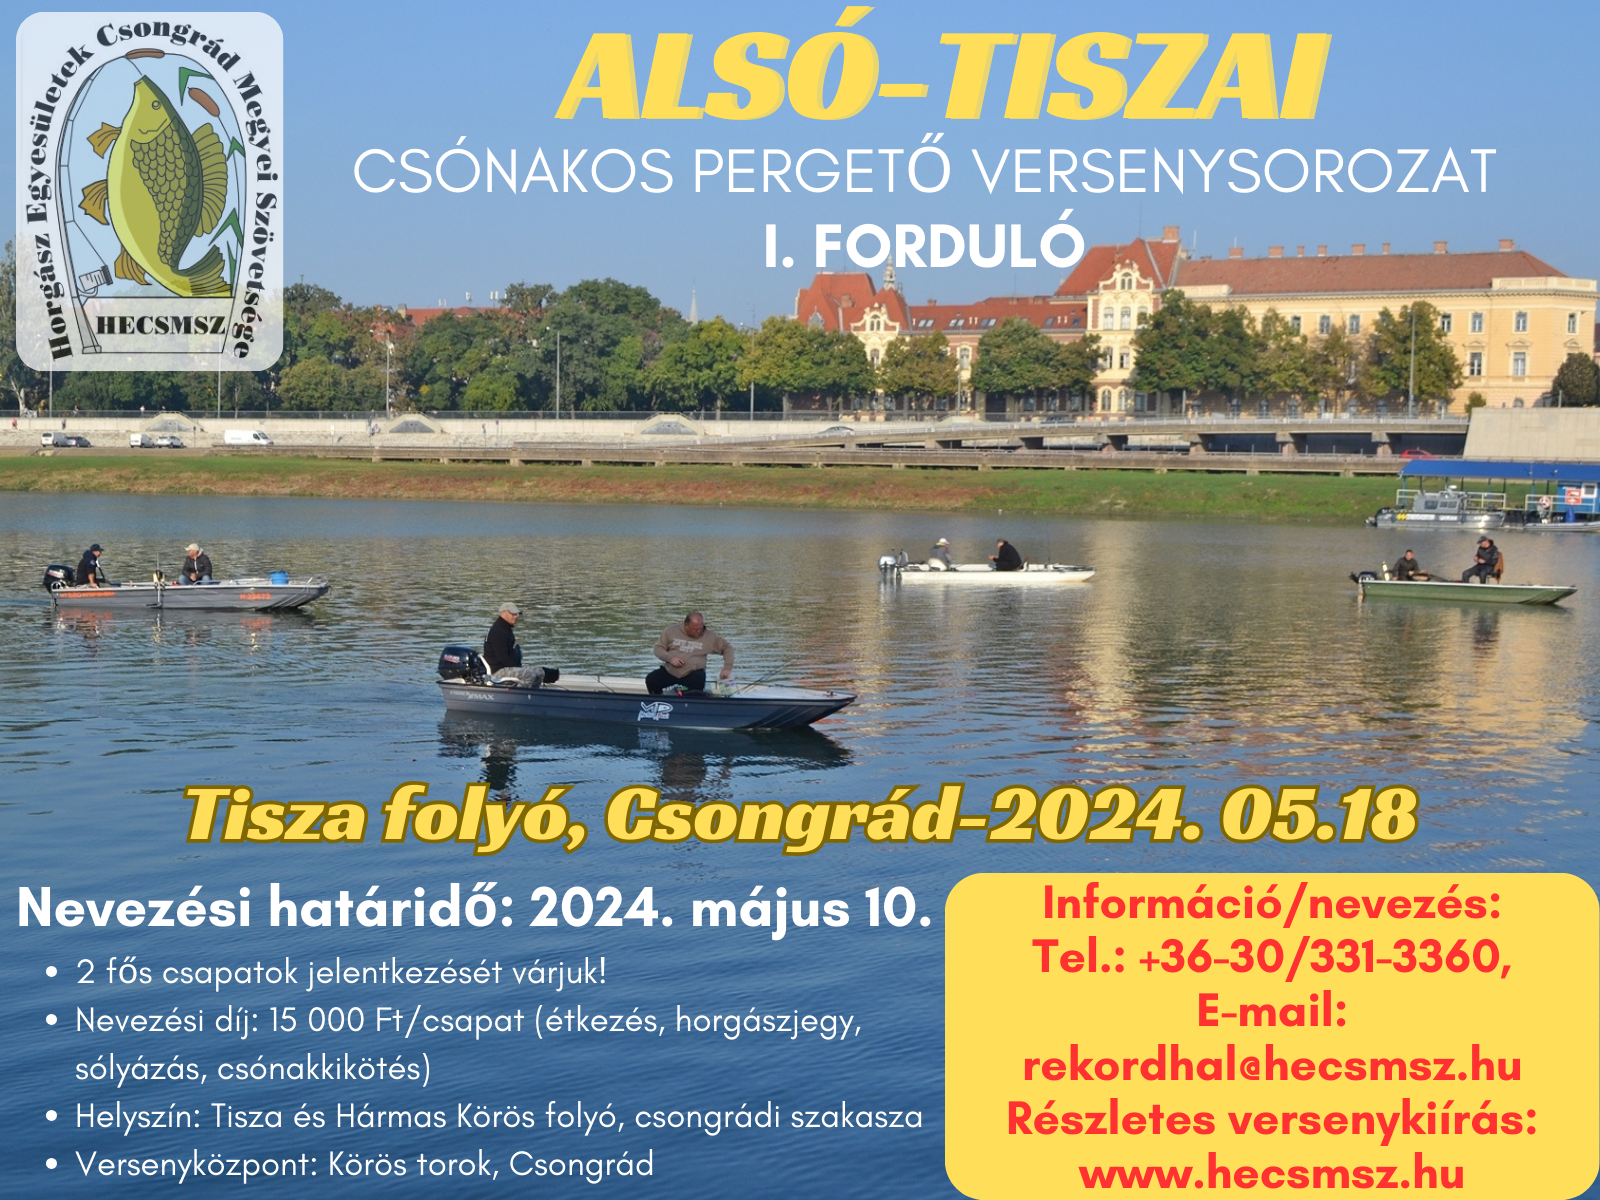 II. HECSMSZ Alsó-tiszai Csónakos Pergető horgászverseny sorozat